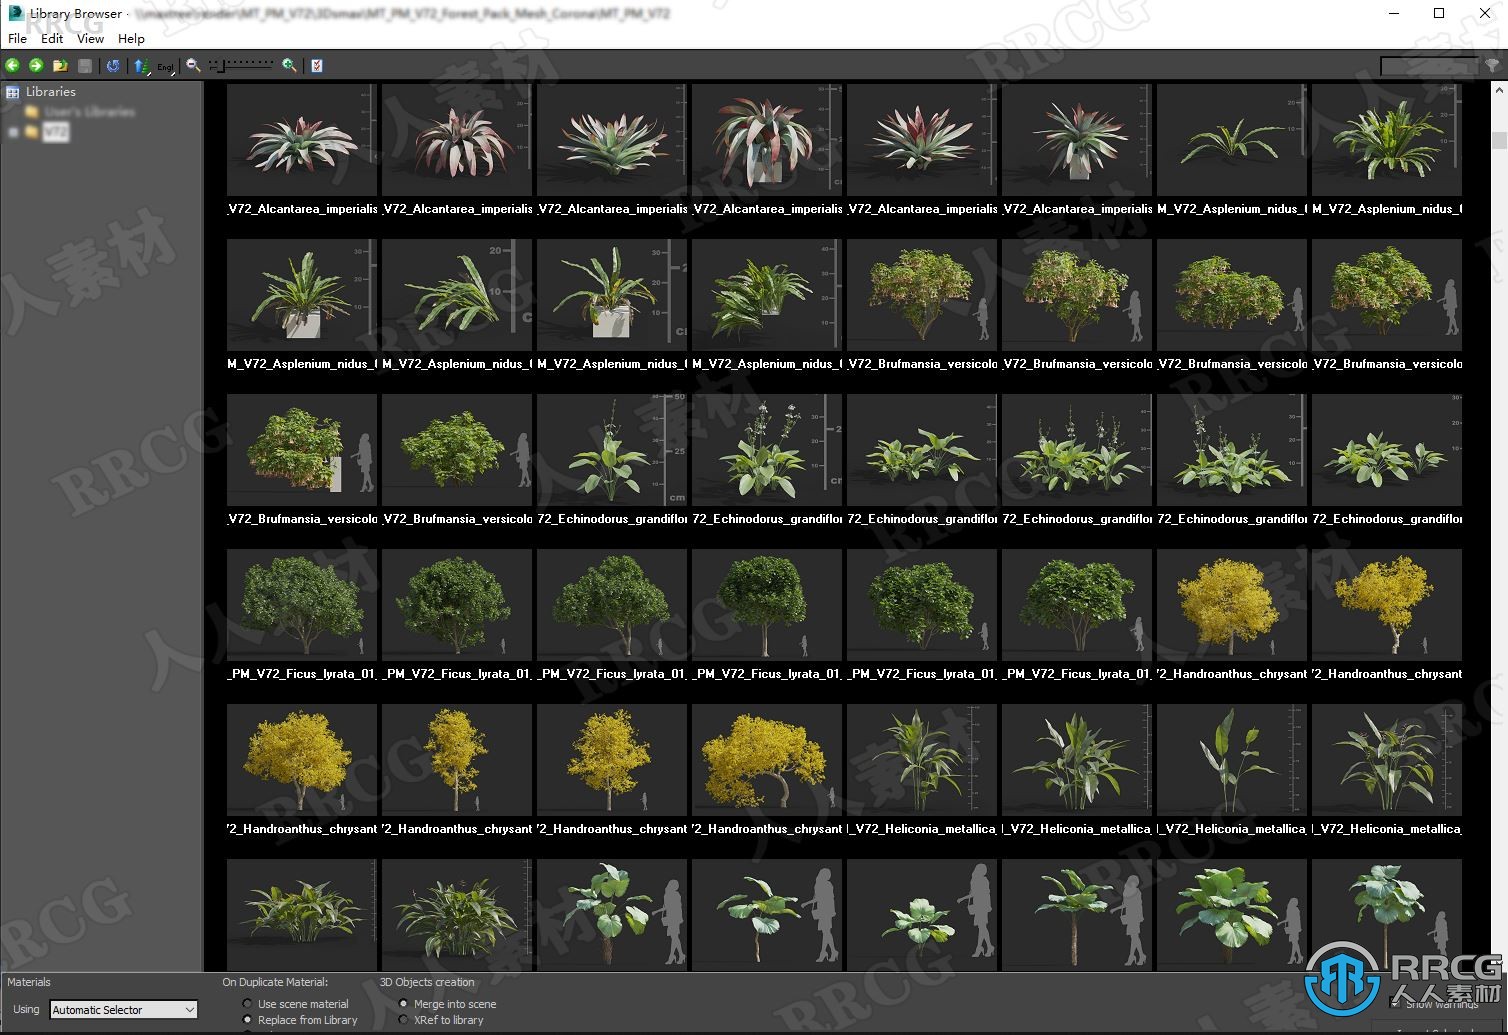 高质量御针草斑鸠菊麝香树潘多拉树等草木植物3D模型合集